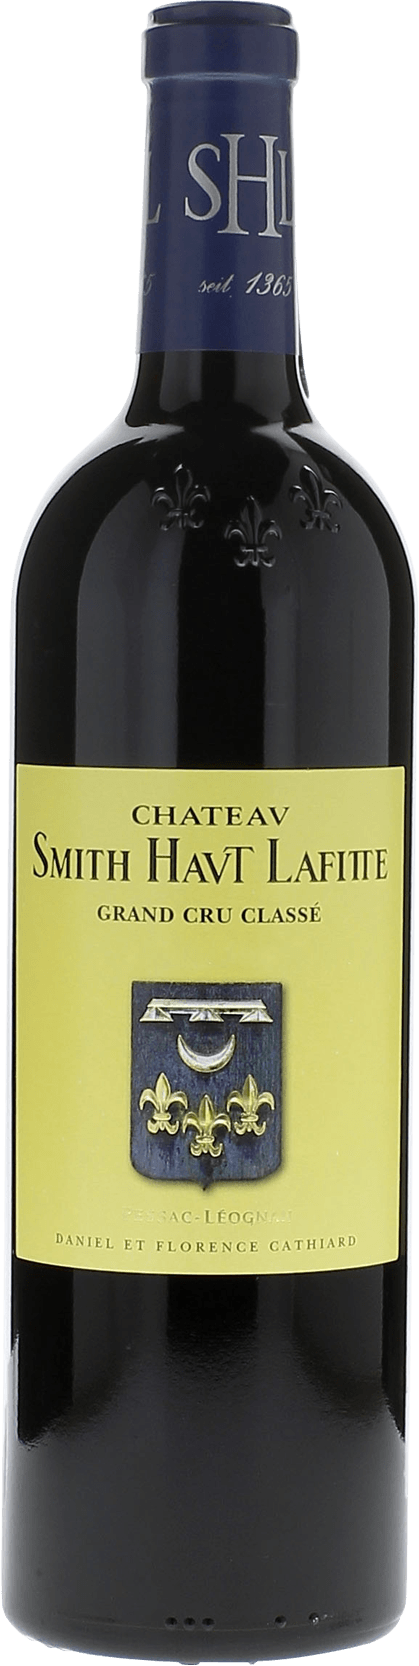 Smith haut lafitte 2015 Grand Cru Class Graves, Bordeaux rouge